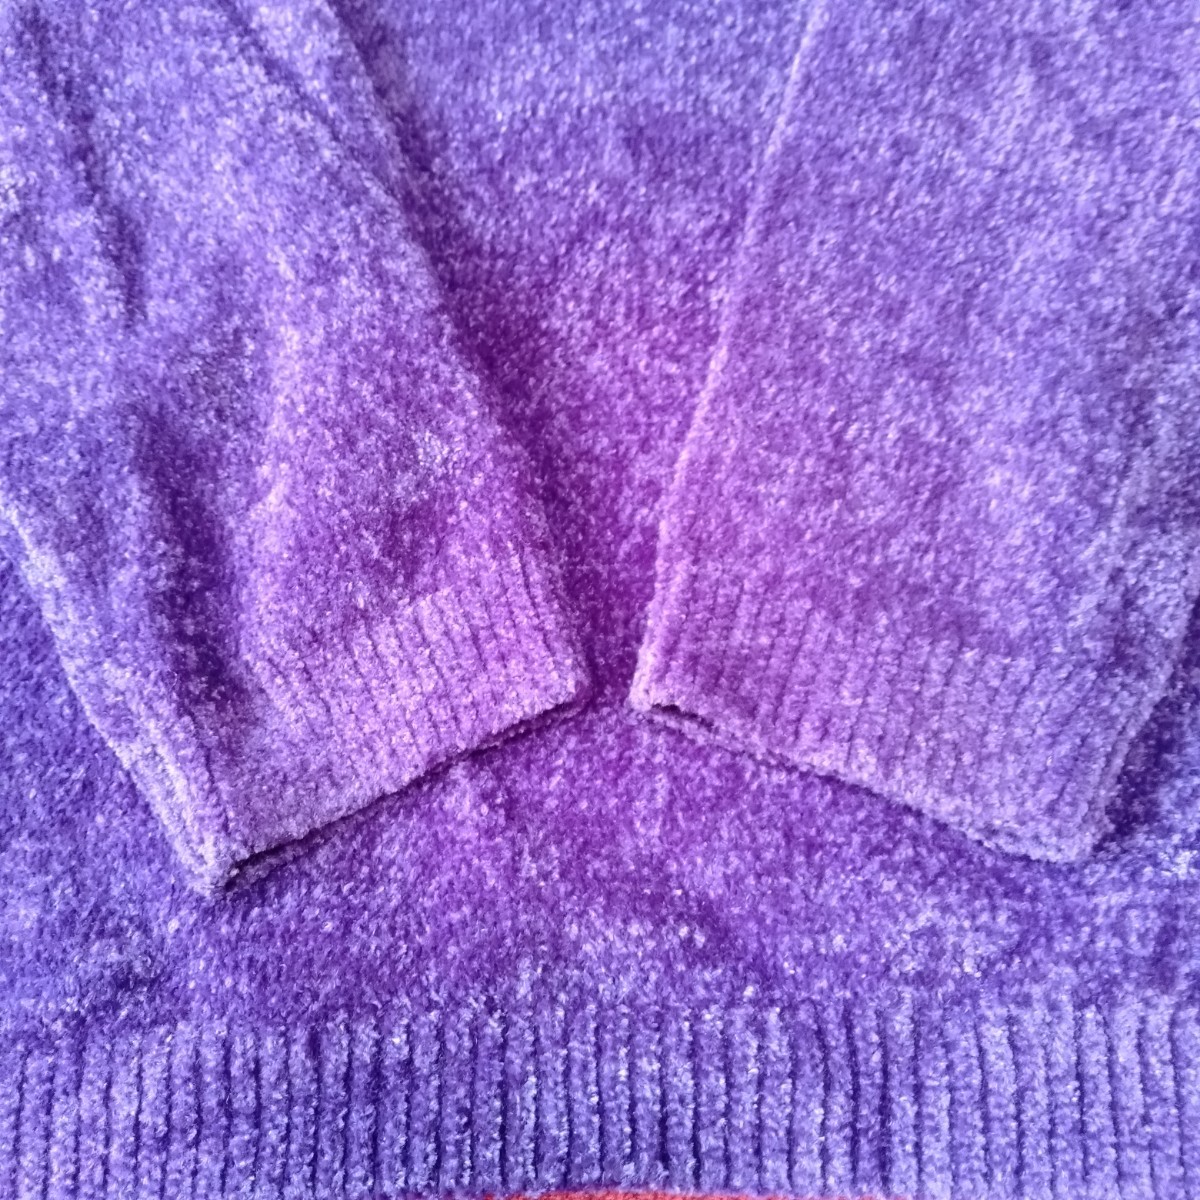 む148 Christian Dior サイズM ニット ナイロン 毛 紫 セーター ラインストーン モールヤーン ディオール 洋服_画像8